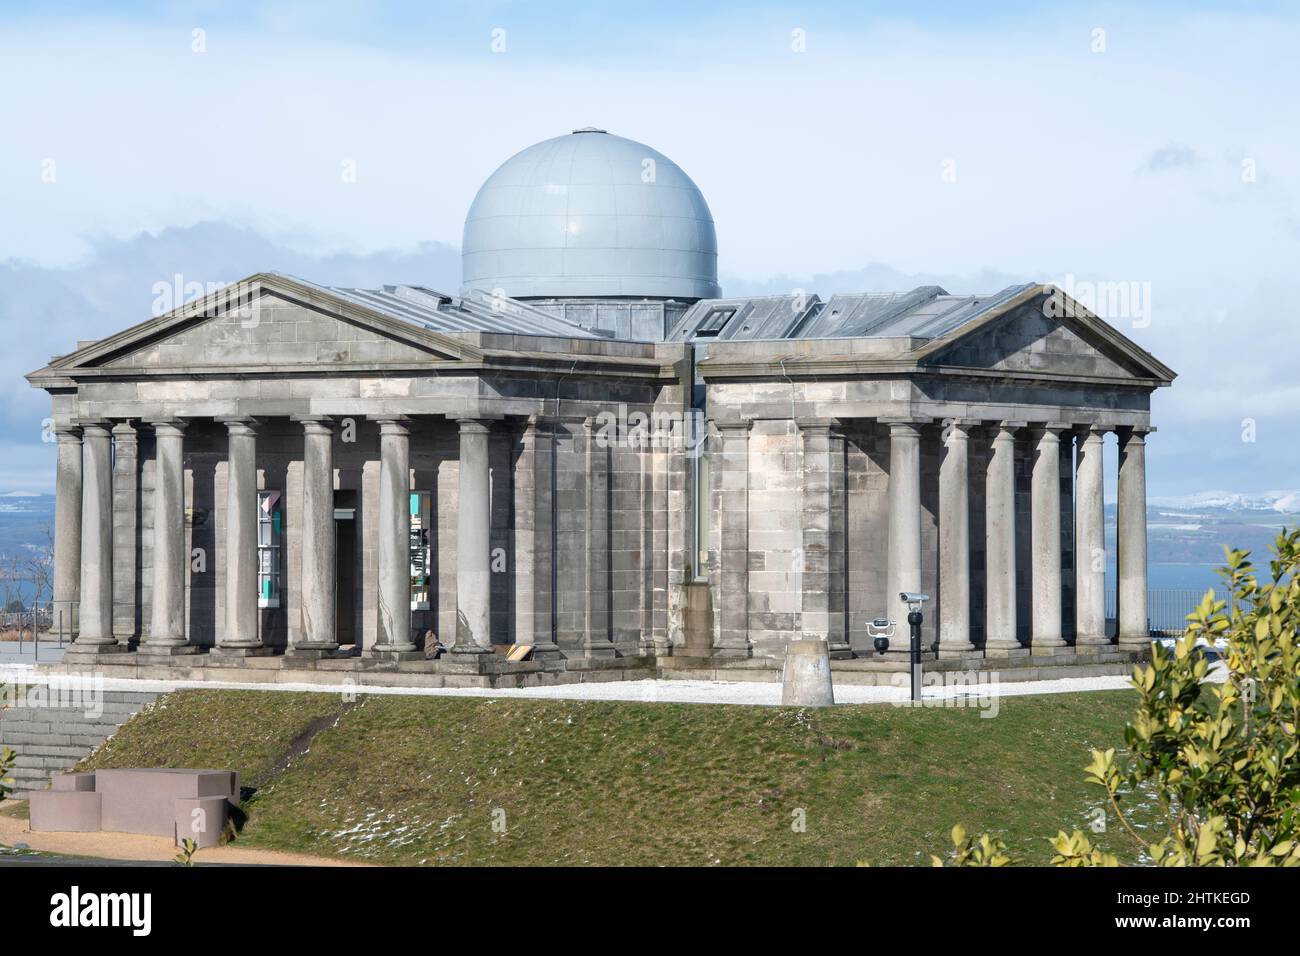 Das Stadtobservatorium auf Calton Hill, Edinburgh, Schottland, in dem sich der kollektive Ausstellungsraum befindet. Stockfoto